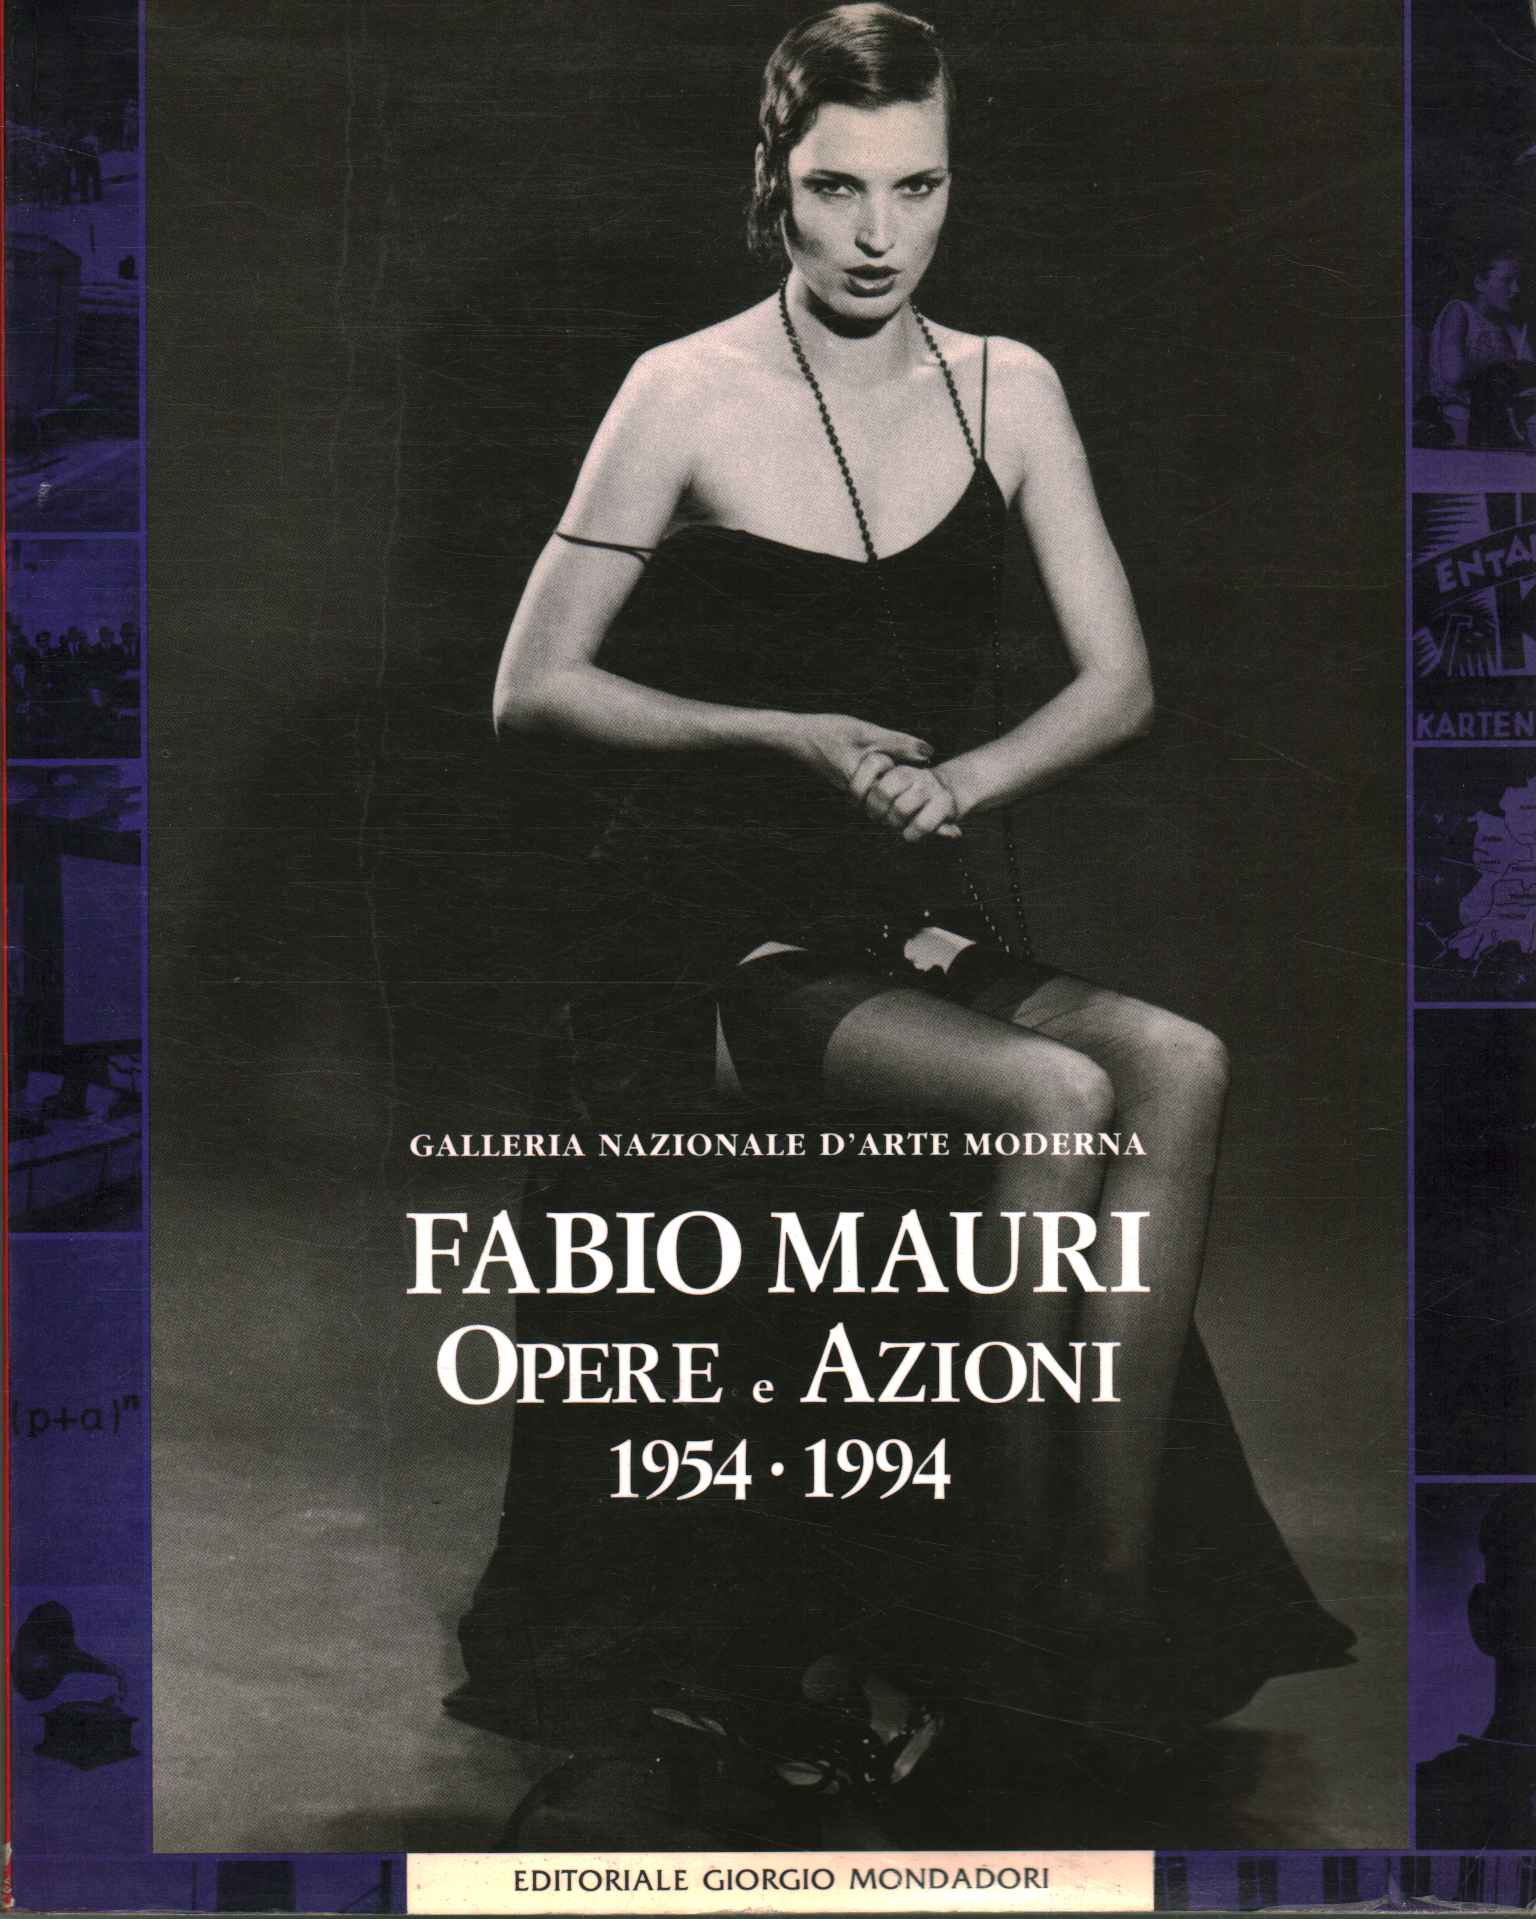 Fabio Mauri. Werke und Aktionen 1954-1994